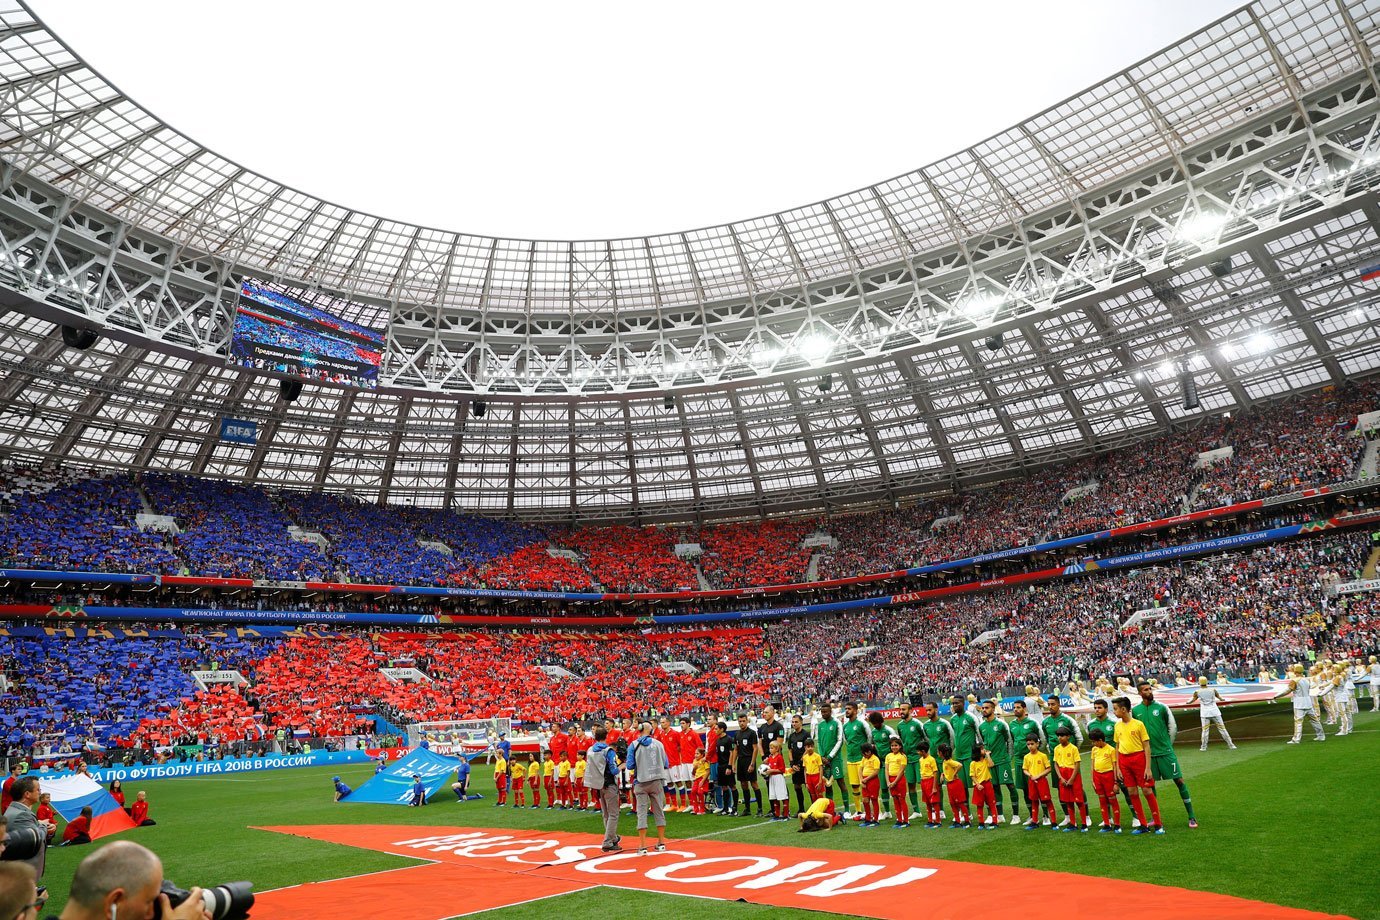 Copa do Mundo: acompanhe a cerimônia de abertura e o jogo de